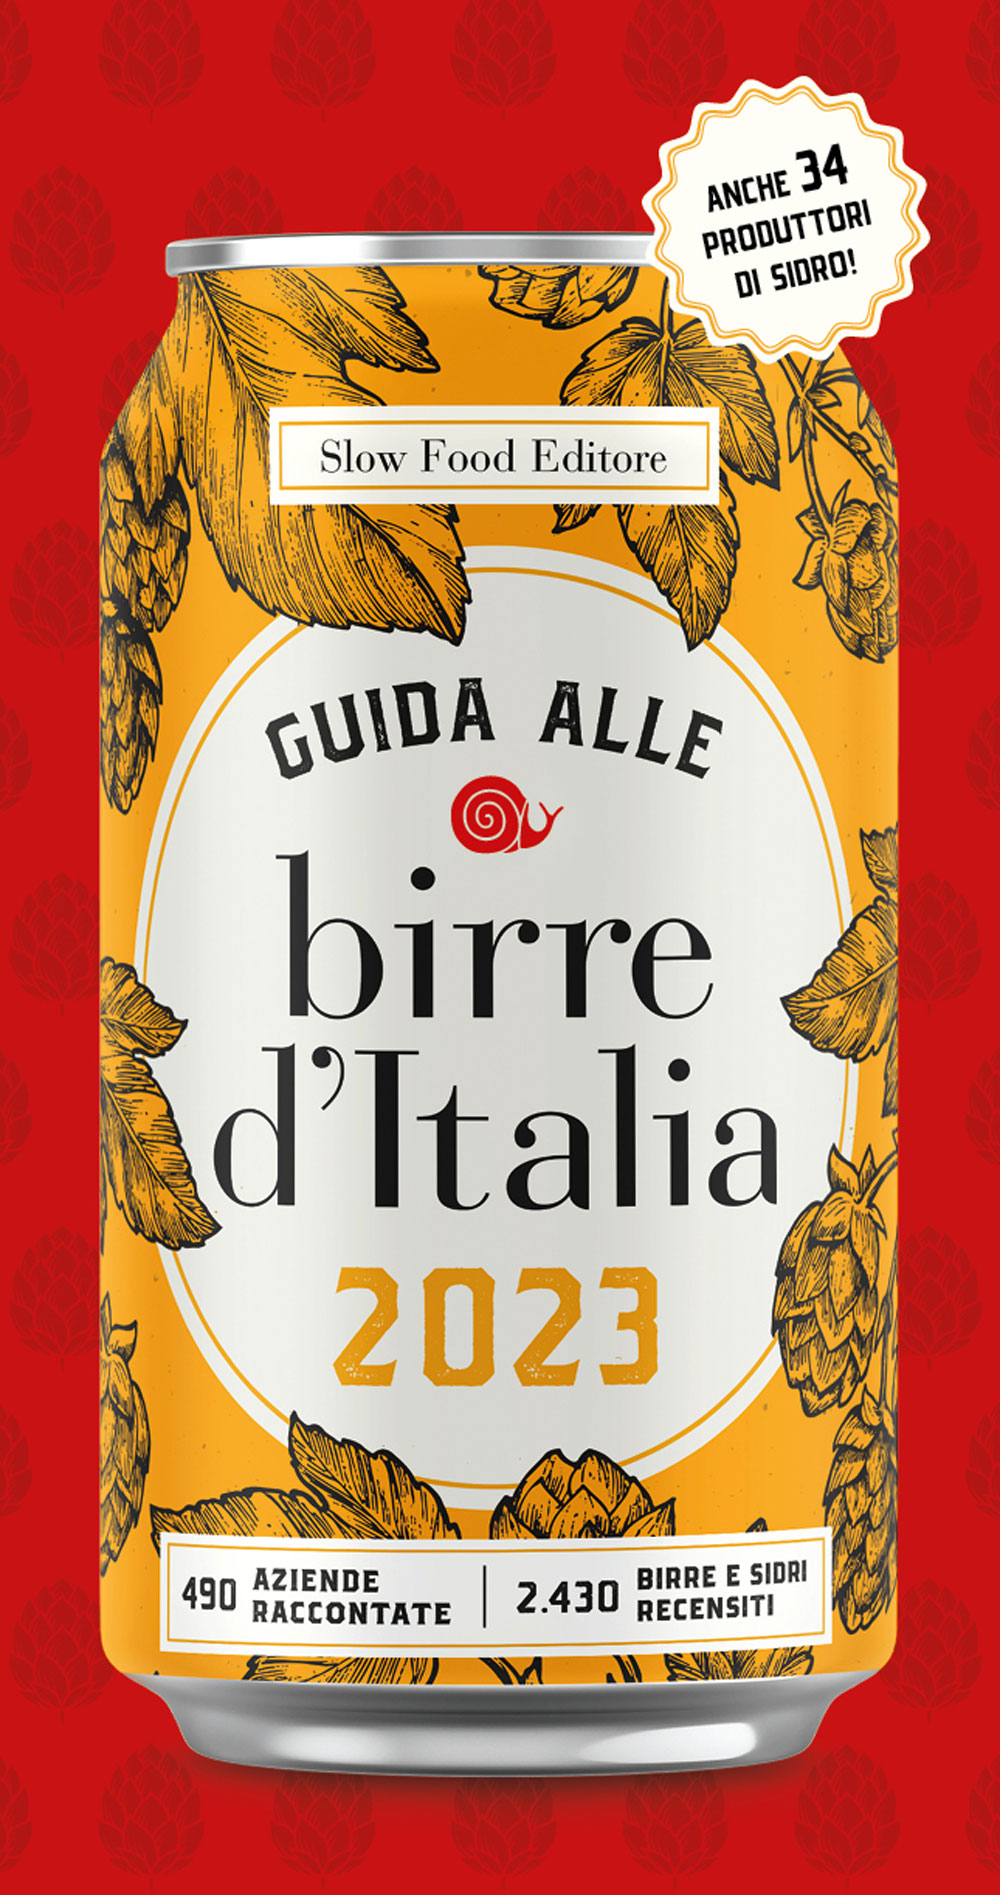 GUIDA ALLE BIRRE D'ITALIA 2023::490 AZIENDE RACCONTATE. 2430 BIRRE E SIDRI RECENSITI